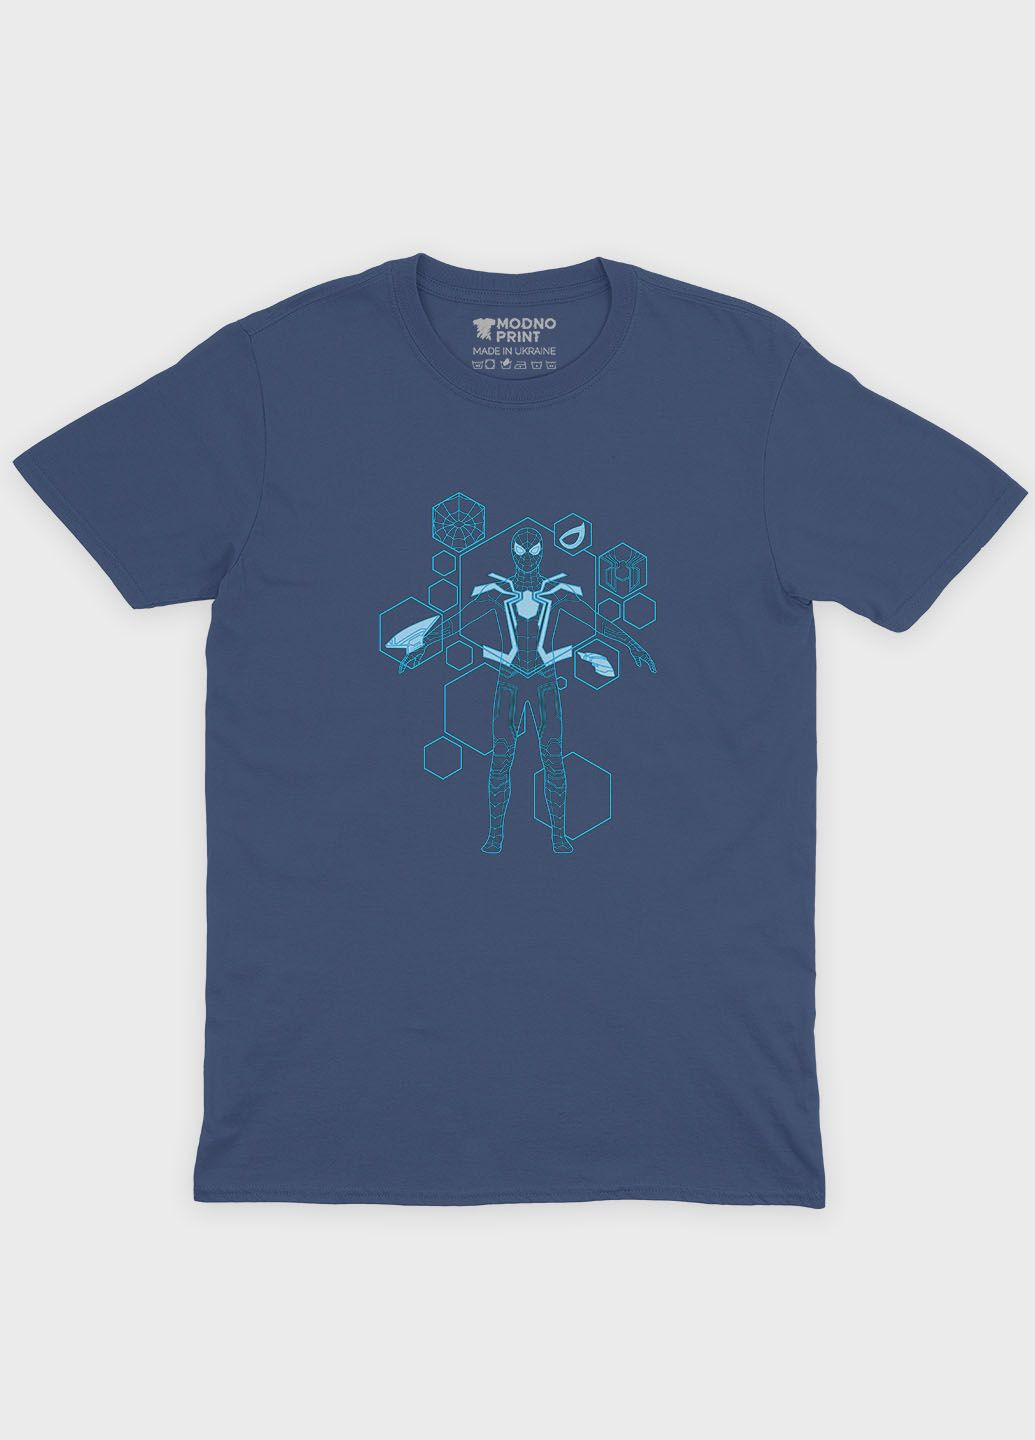 Темно-синяя демисезонная футболка для девочки с принтом супергероя - человек-паук (ts001-1-nav-006-014-094-g) Modno